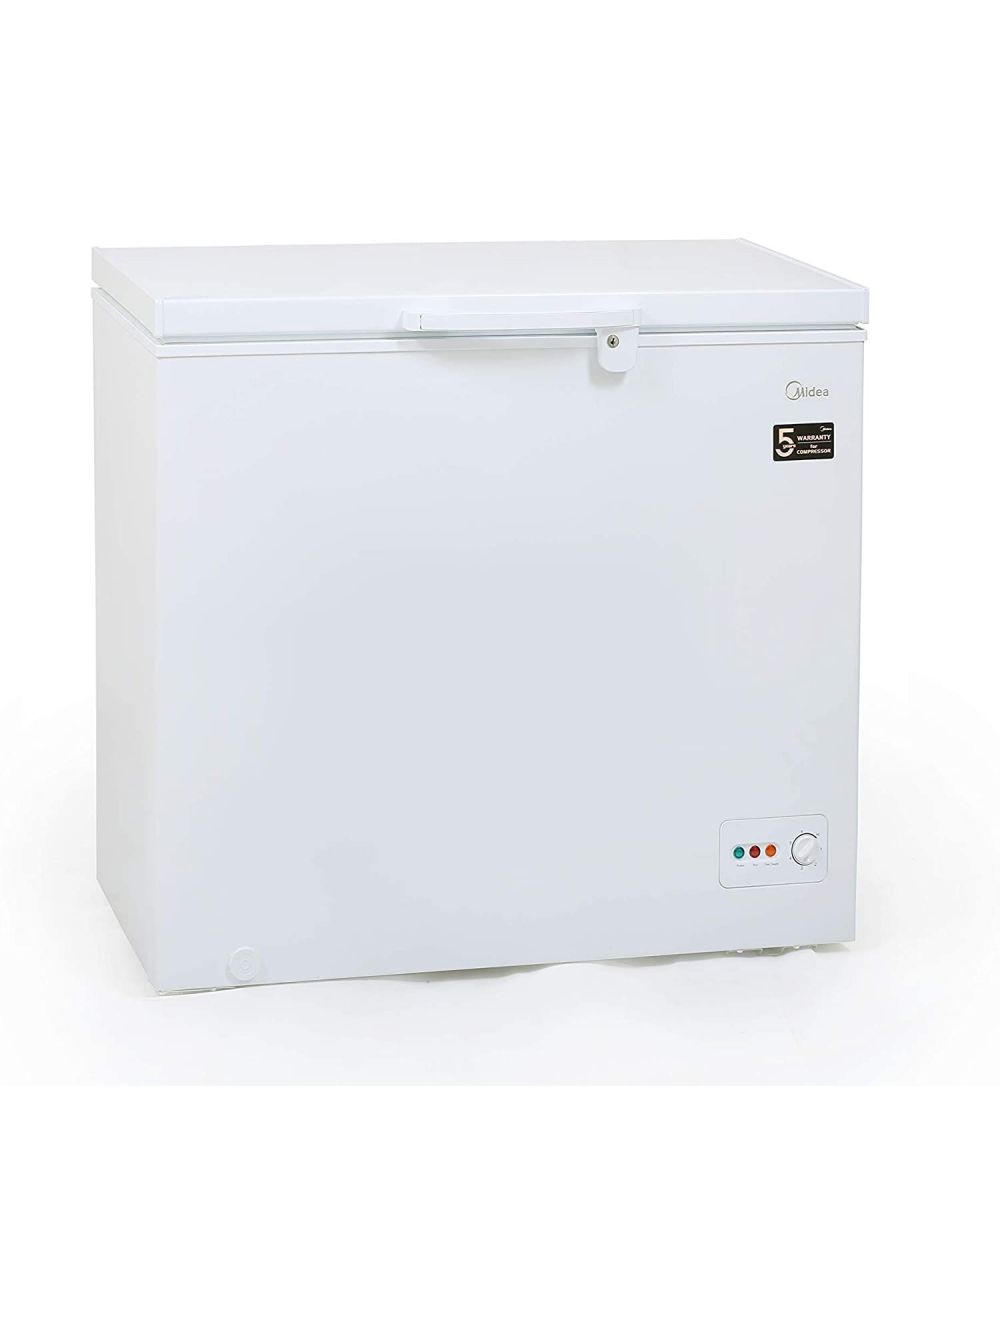 Midea Chest Freezer White Color 249 L Gross Capacity-HS324C